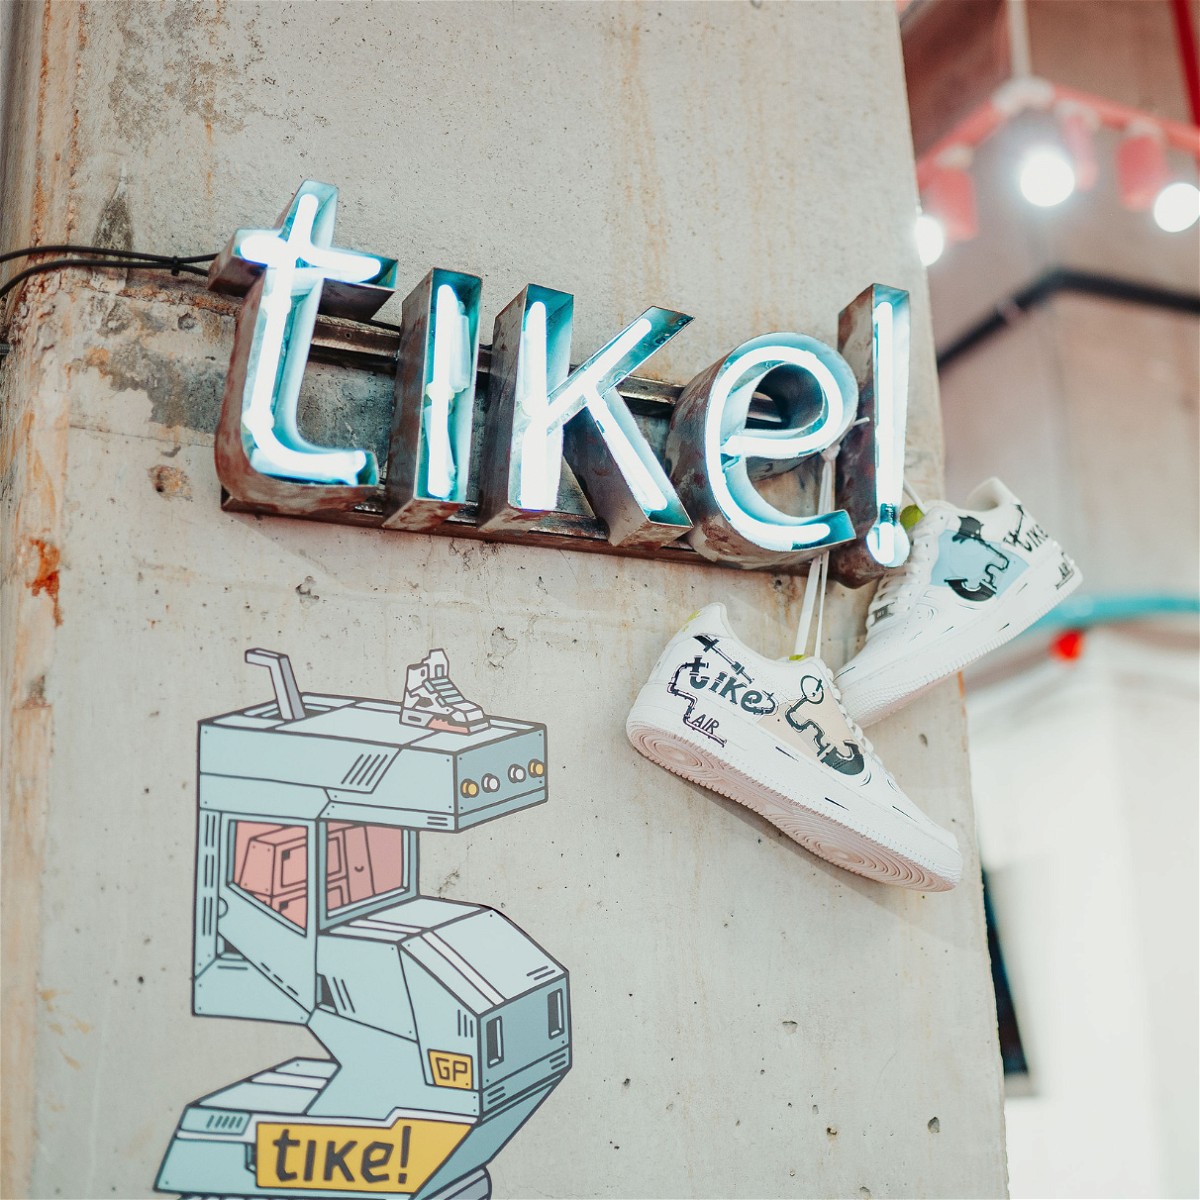 Inside tike! – Bucharest's Ultimate Sneaker Destination